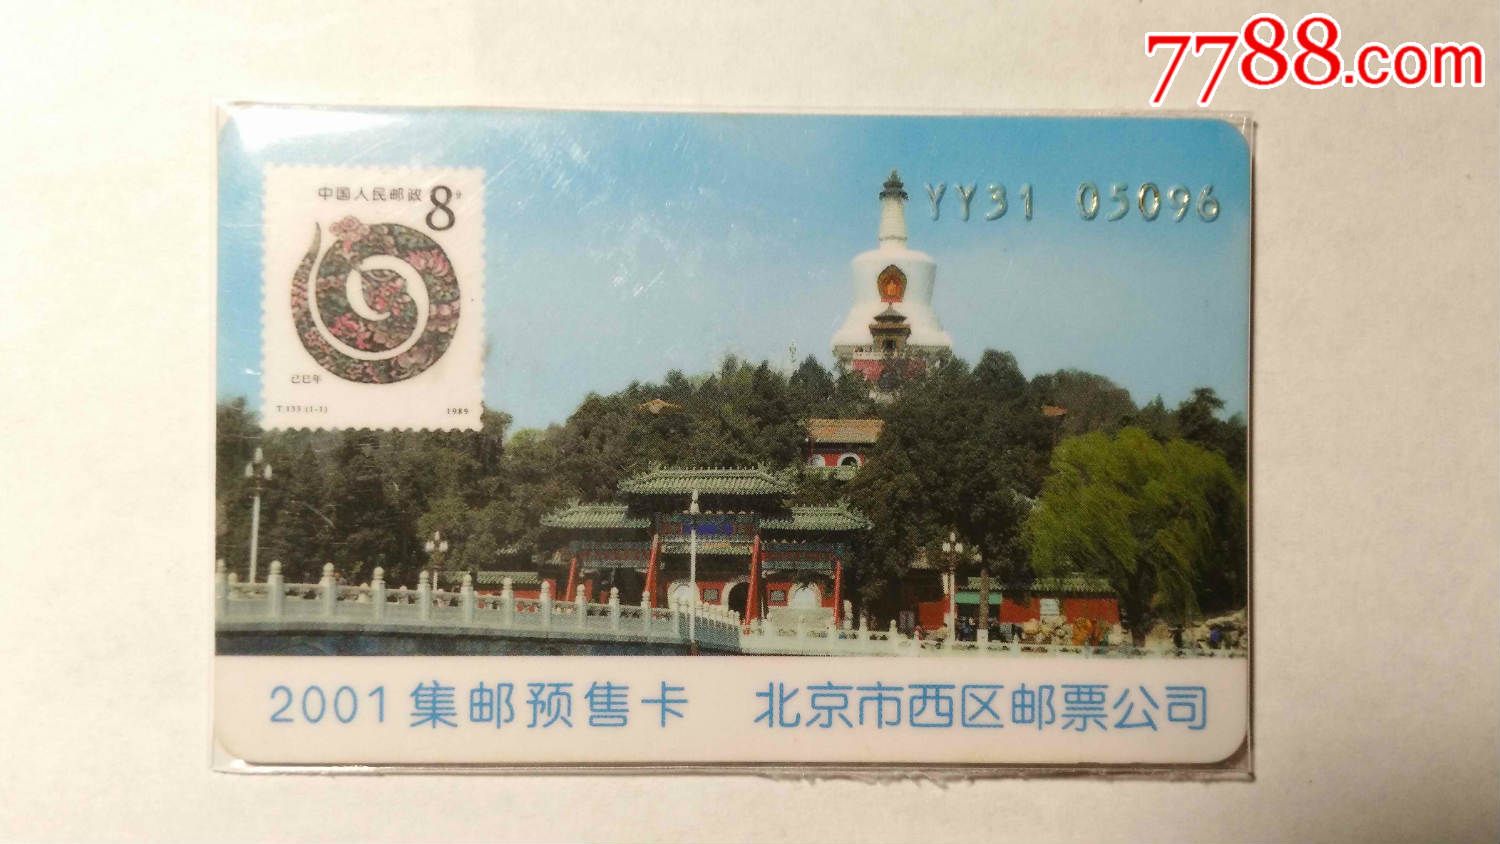 北京市西区邮票公司---2001集邮预售卡-价格:1